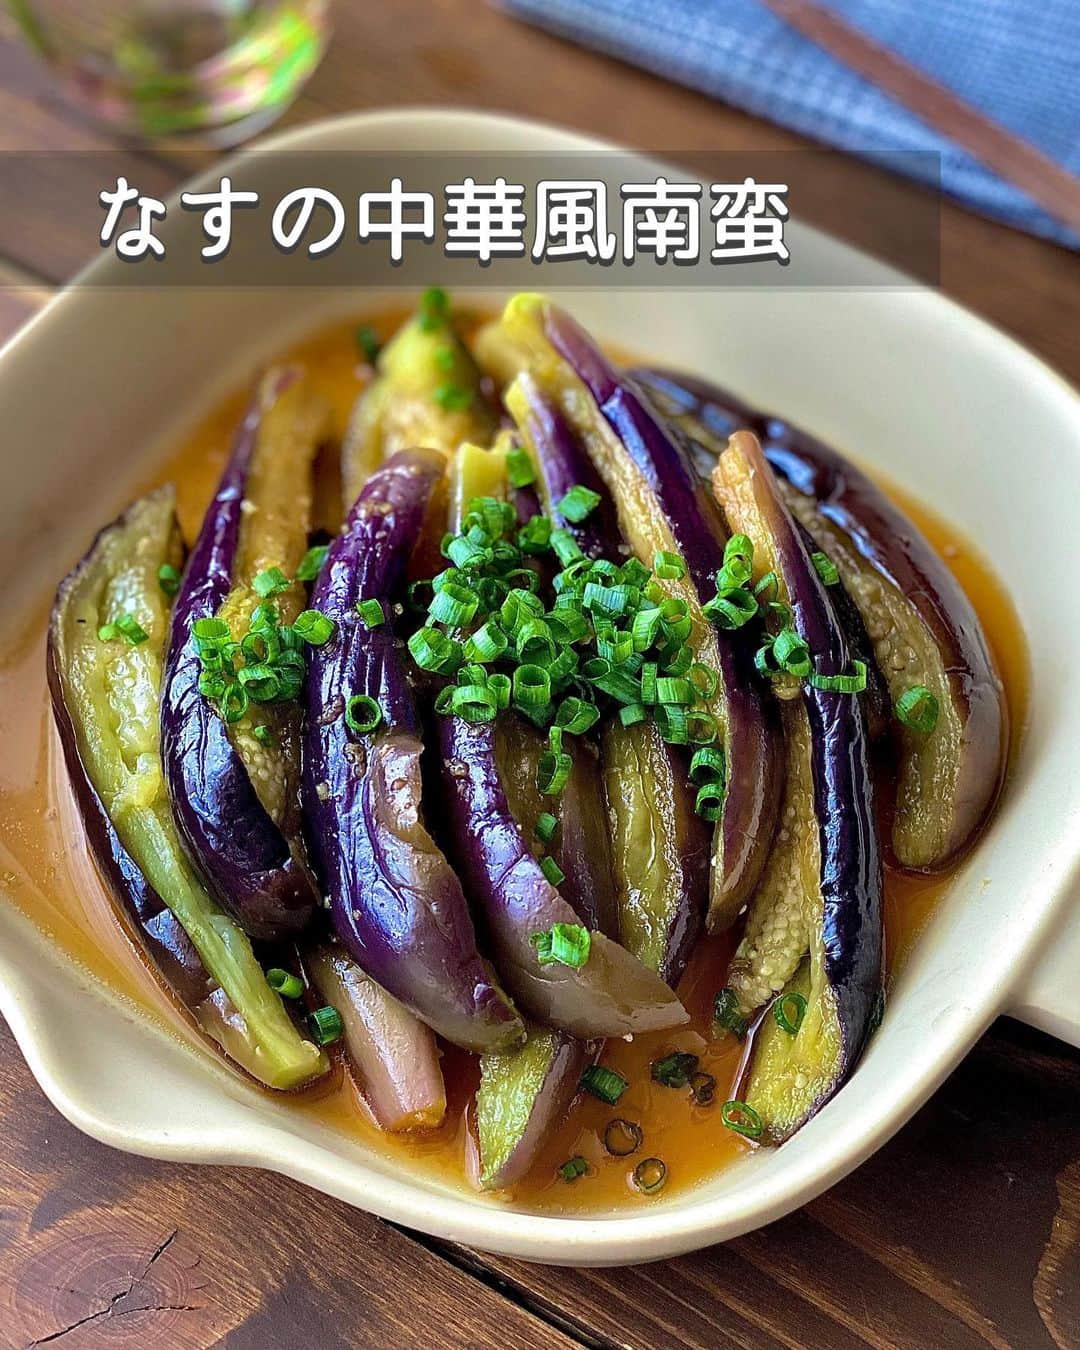 ちおりのインスタグラム：「【レンジで簡単！なすトロトロ✨】 ⁡ 他のレシピを見る→ @chiori.m.m をチェック✅ ⁡ ⁡ ━︎━︎━︎━︎━︎━︎━︎━︎━︎━︎━︎━︎ なすの中華風南蛮 ⁡ Nadiaレシピ🆔412193 ━︎━︎━︎━︎━︎━︎━︎━︎━︎━︎━︎━︎ ⁡ ⁡ ⁡ こんにちは(^ ^) ⁡ 今日は、トロンとした食感のなすに 南蛮酢が染み込んだ かんたん副菜をご紹介させてください✨ ⁡ なすはレンジ加熱だけでOK👌🏻 パパッと作れるのであと1品や お弁当おかずにもおススメ🍱 ⁡ 甘酸っぱいタレの旨みが ジュワっとあふれて美味しいんです🍆 夏は冷やして食べても◎ ⁡ 良かったら作ってみてください(^^) ⁡ ⁡ ⁡ ________________________________________ ⁡ ⁡ ✍︎ ✍︎recipe ✍︎ ✍︎ ⁡ ⁡ 👩‍🌾【材料】2人分 •なす………………………3本（約250g） A砂糖、しょうゆ ……各小さじ4 A酢…………………………大さじ1 A鶏ガラスープの素……小さじ1/2弱 Aおろし生姜、にんにくチューブ…各小さじ1/2 Aごま油……………………小さじ1 ⁡ ⁡ ________________________________________ ⁡ ⁡ ⁡ 👩‍🍳【作り方】 ❶ボウルに【A】を混ぜ合わせてタレをつくる。 ⁡ ❷なすは水にくぐらせて1本ずつヘタごとラップで包み、耐熱皿にのせてレンジ600wで4分加熱する。取り出し、ラップのまま冷水に1〜2分浸け、表面の粗熱をとる。 ⁡ ❸ラップを取り、ペーパーで水気をおさえる。ヘタを切り、手で縦に6等分に裂いて熱いうちにタレとあえる。 ⁡ ❹器に盛り、好みで小口切りの小ねぎを散らす。冷やして食べても美味しいです。 ⁡ ⁡ ⁡ ________________________________________ ⁡ ⁡ ⁡ 📝【POINT】 •【A】のにんにくチューブは省いてもOKです。 ⁡ •しっかりした味付けです。薄味がお好みでしたら 調味料の量を調整してください。 ⁡ •なすは加熱後、冷水につけることで色止めができ、きれいな色を保てます。 ⁡ •なすを冷水から取り出しても中はまだ熱いので気をつけてください。 ⁡ •熱いうちに南蛮酢とあえると味染みがよくなります。 ⁡ •日持ちは冷蔵で2〜3日です。 ⁡ ⁡ ⁡ ≡︎≡︎≡︎≡︎≡︎≡︎≡︎≡︎≡︎≡︎≡︎≡︎≡︎≡︎≡︎≡︎≡︎≡︎≡︎≡︎≡︎≡︎≡︎≡︎≡︎≡︎≡︎≡︎≡︎≡︎≡︎≡︎≡︎≡︎ 【✅新刊レシピ本のお知らせ】 📕ちおり流くり返し作りたいおかず 🙇🏻‍♀️おかげ様で書籍累計10万部を突破しました。 ⁡ ⁡ 全国の書店、Amazon、楽天ブックス 宝島チャンネルにて発売中です。 ⁡ ➤ ➤ ➤ @chiori.m.m のストーリーハイライト。 プロフィールのリンクからご覧いただけます😊 📗ちおりの簡単絶品おかず１、２ 既刊もぜひご覧いただきたいです。 ⁡ ≡︎≡︎≡︎≡︎≡︎≡︎≡︎≡︎≡︎≡︎≡︎≡︎≡︎≡︎≡︎≡︎≡︎≡︎≡︎≡︎≡︎≡︎≡︎≡︎≡︎≡︎≡︎≡︎≡︎≡︎≡︎≡︎≡︎≡︎ ⁡ ⁡ 最後までご覧いただきありがとうございます😊 皆さんのいいね、コメント、レシピ保存が 日々の励みになっています^ ^ ⁑ ⁑ ⁑ ⁑ ⁑ ⁑ ⁑  #なす #なすレシピ #茄子レシピ   #Nadiaレシピ #Nadiaartist  #japanesefood   #食卓 #献立 #簡単ごはん #南蛮漬け  #簡単レシピ #節約レシピ #時短レシピ  #日々の暮らし #作り置きレシピ #副菜   #夕飯レシピ #お弁当レシピ #定番レシピ  #料理初心者 #おつまみレシピ #副菜レシピ  #作り置き #料理レシピ #野菜レシピ  #レンジでチン #お弁当おかず」